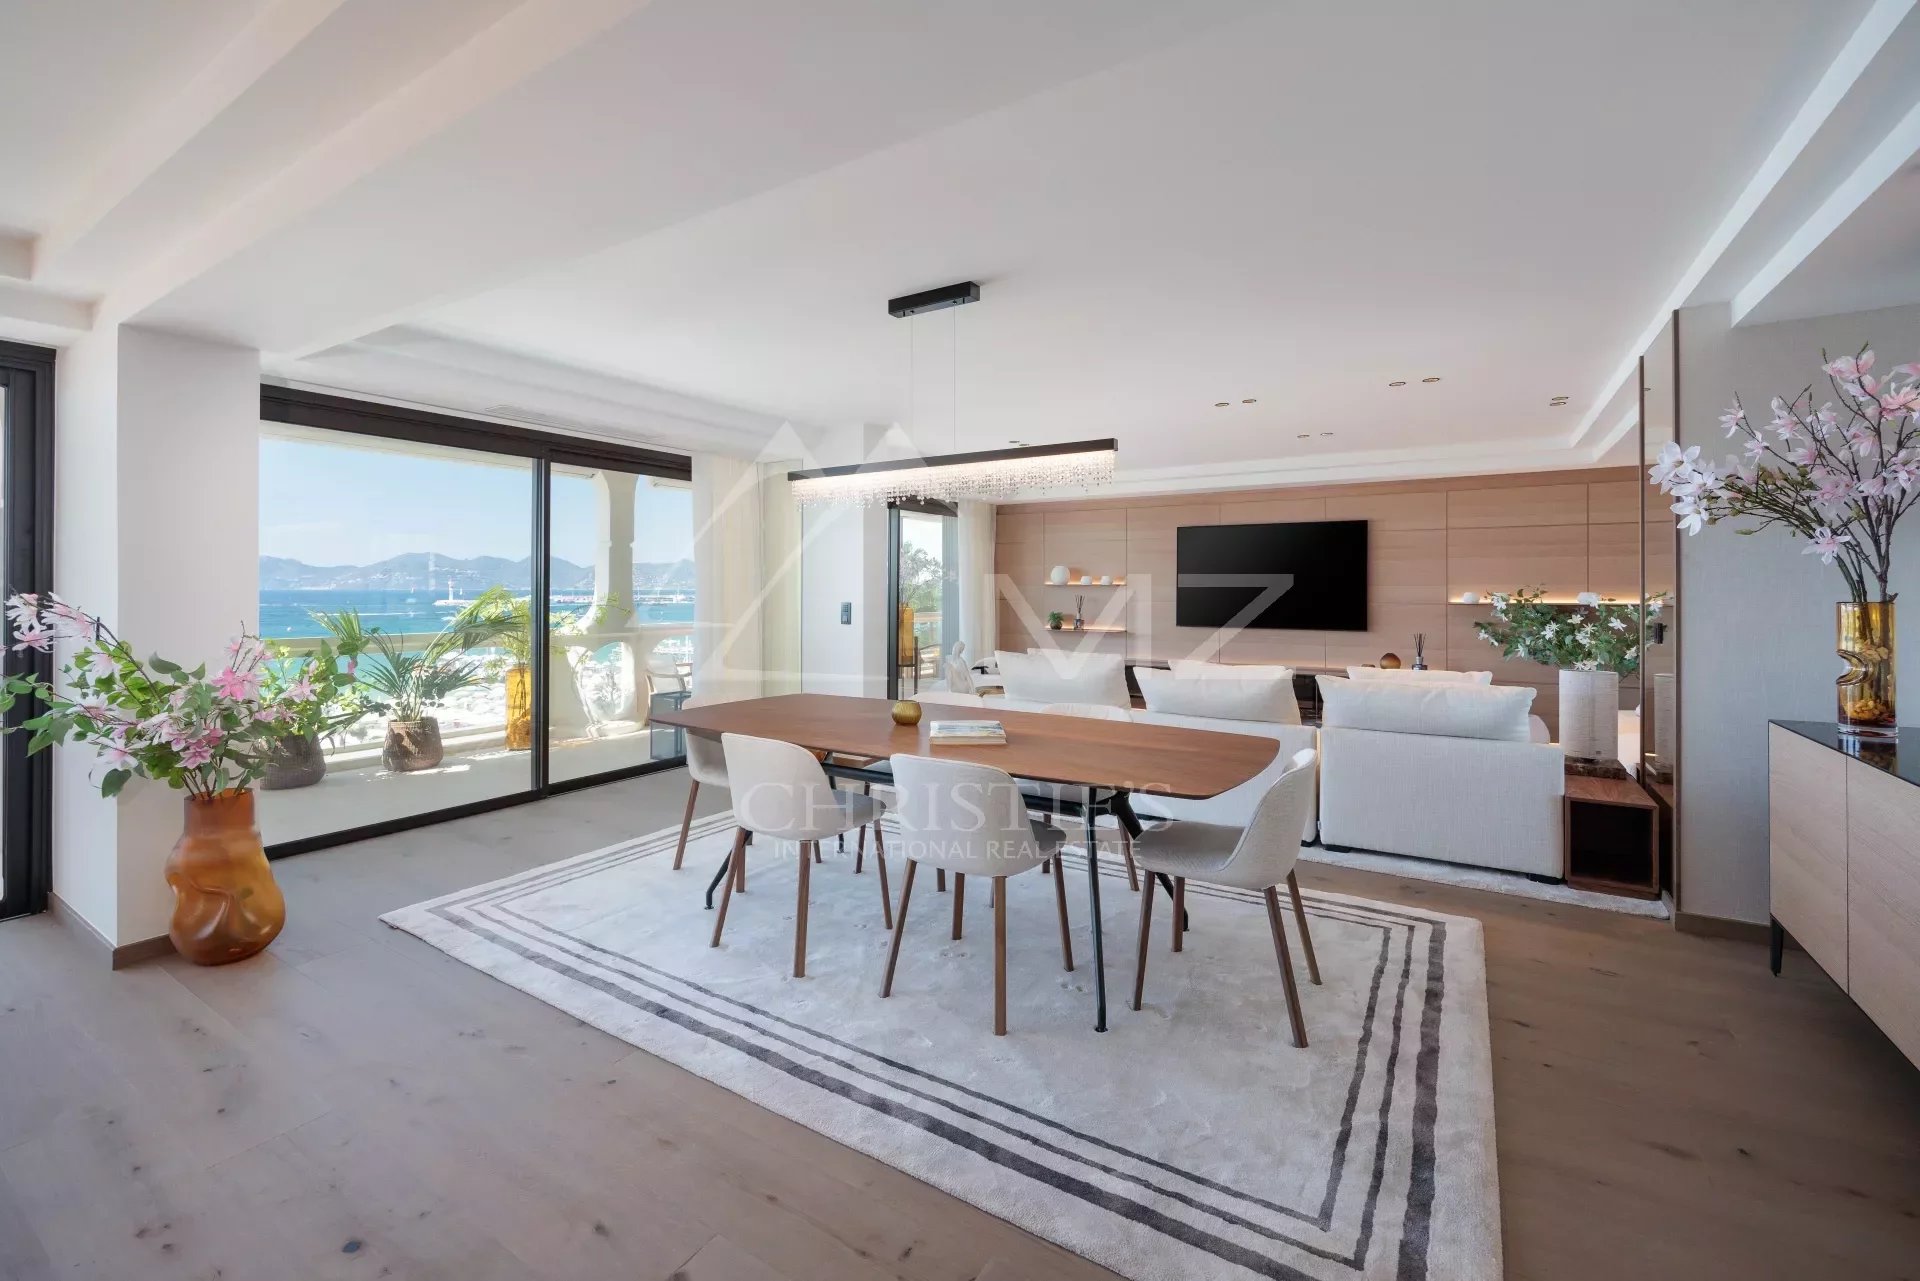 Cannes - Croisette - Wunderschöne Wohnung mit Meerblick